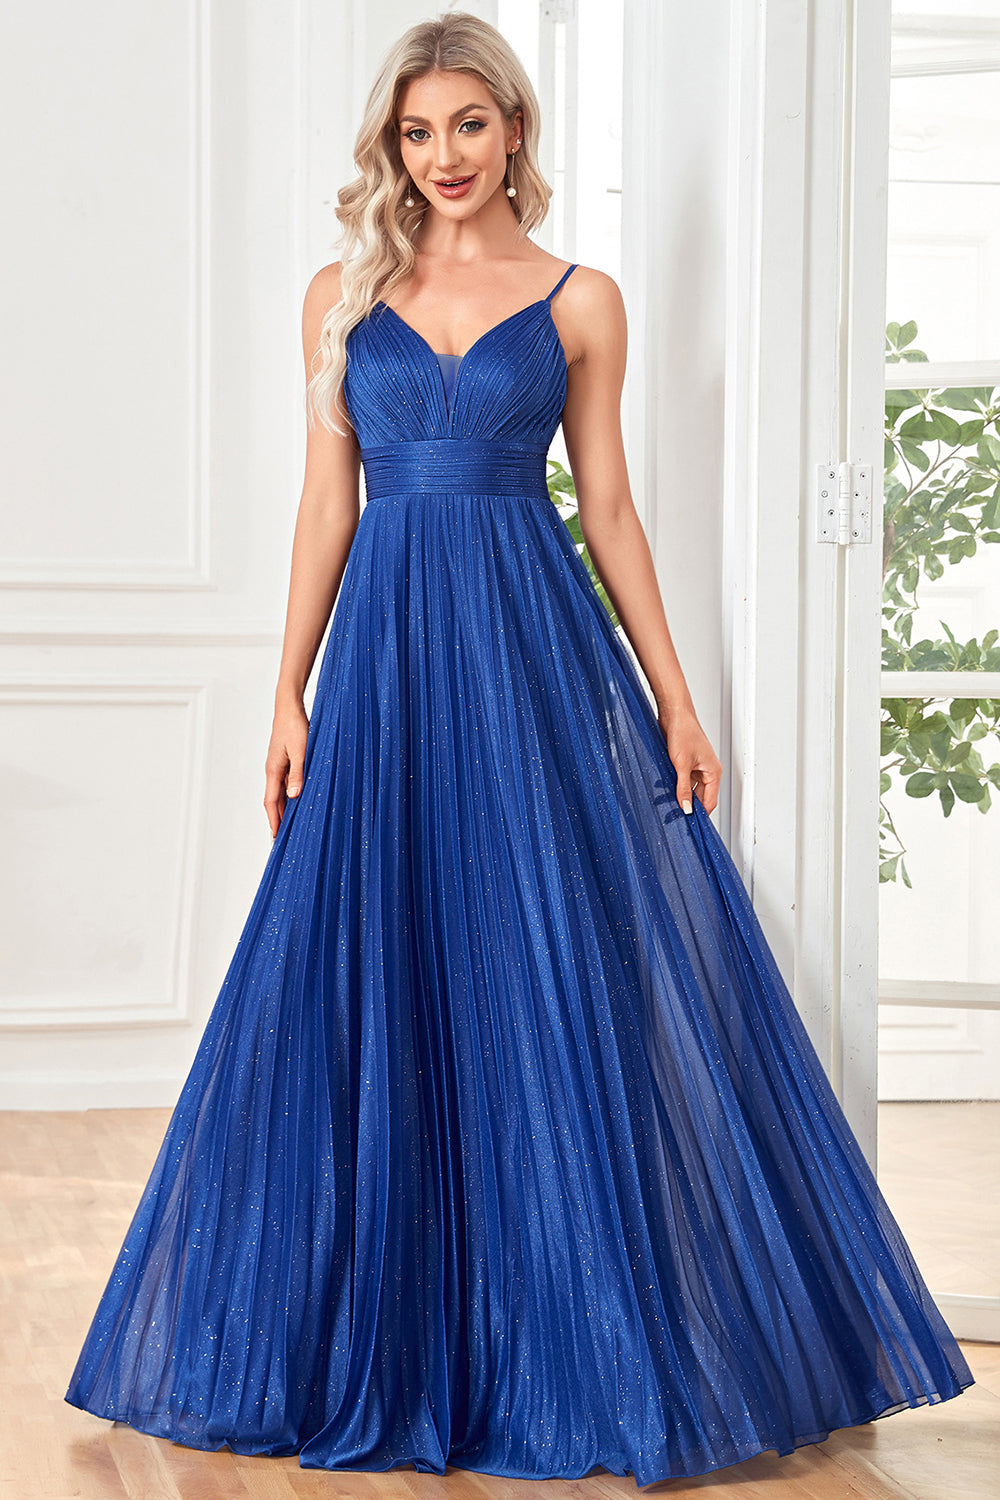 Glitter A-Line Dark Blue Prom Dress